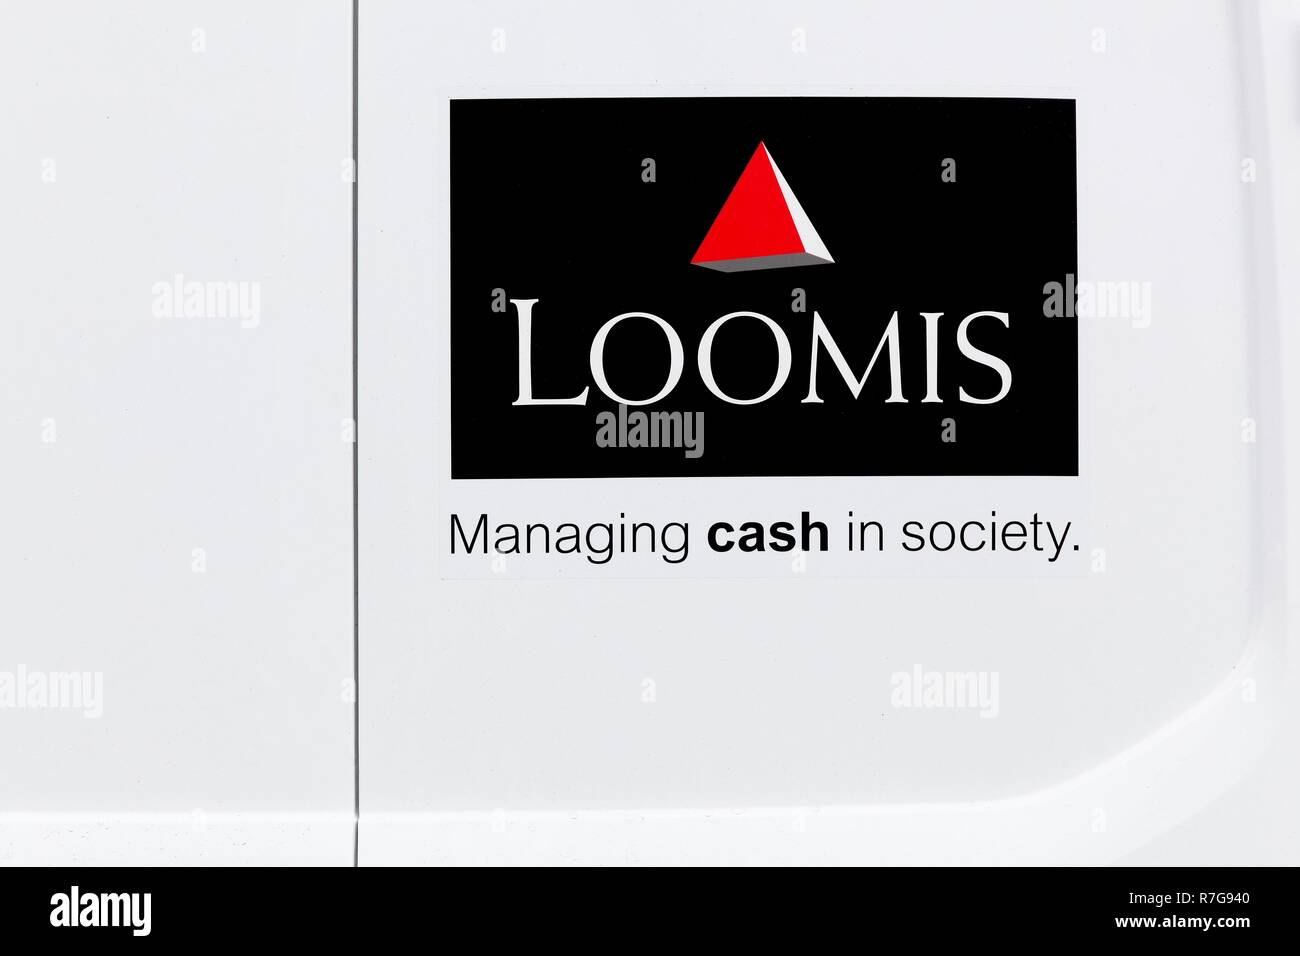 Oslo, Norvège - 27 août 2018 : Loomis logo sur un véhicule. Loomis est une entreprise de manipulation de l'argent et appartient au Groupe Securitas AB Banque D'Images